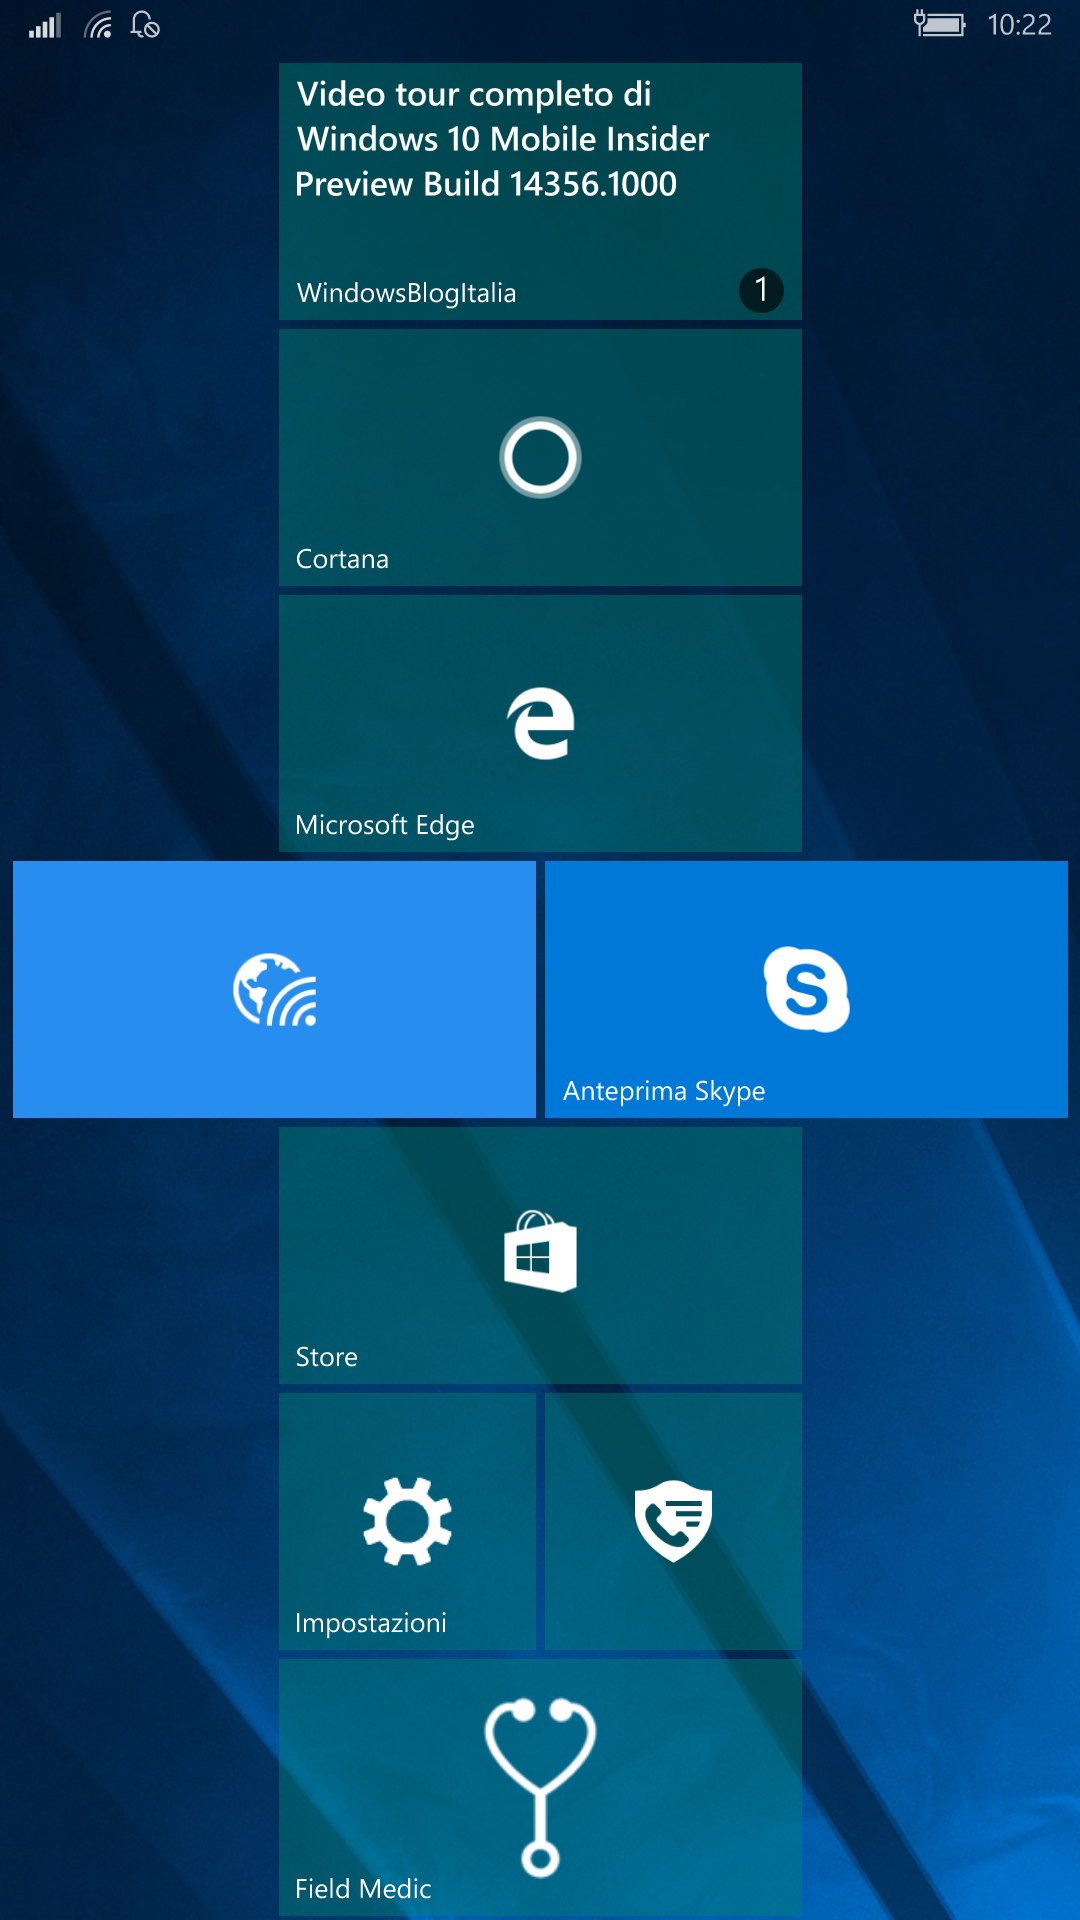 Nuovo wallpaper - Windows 10 Mobile